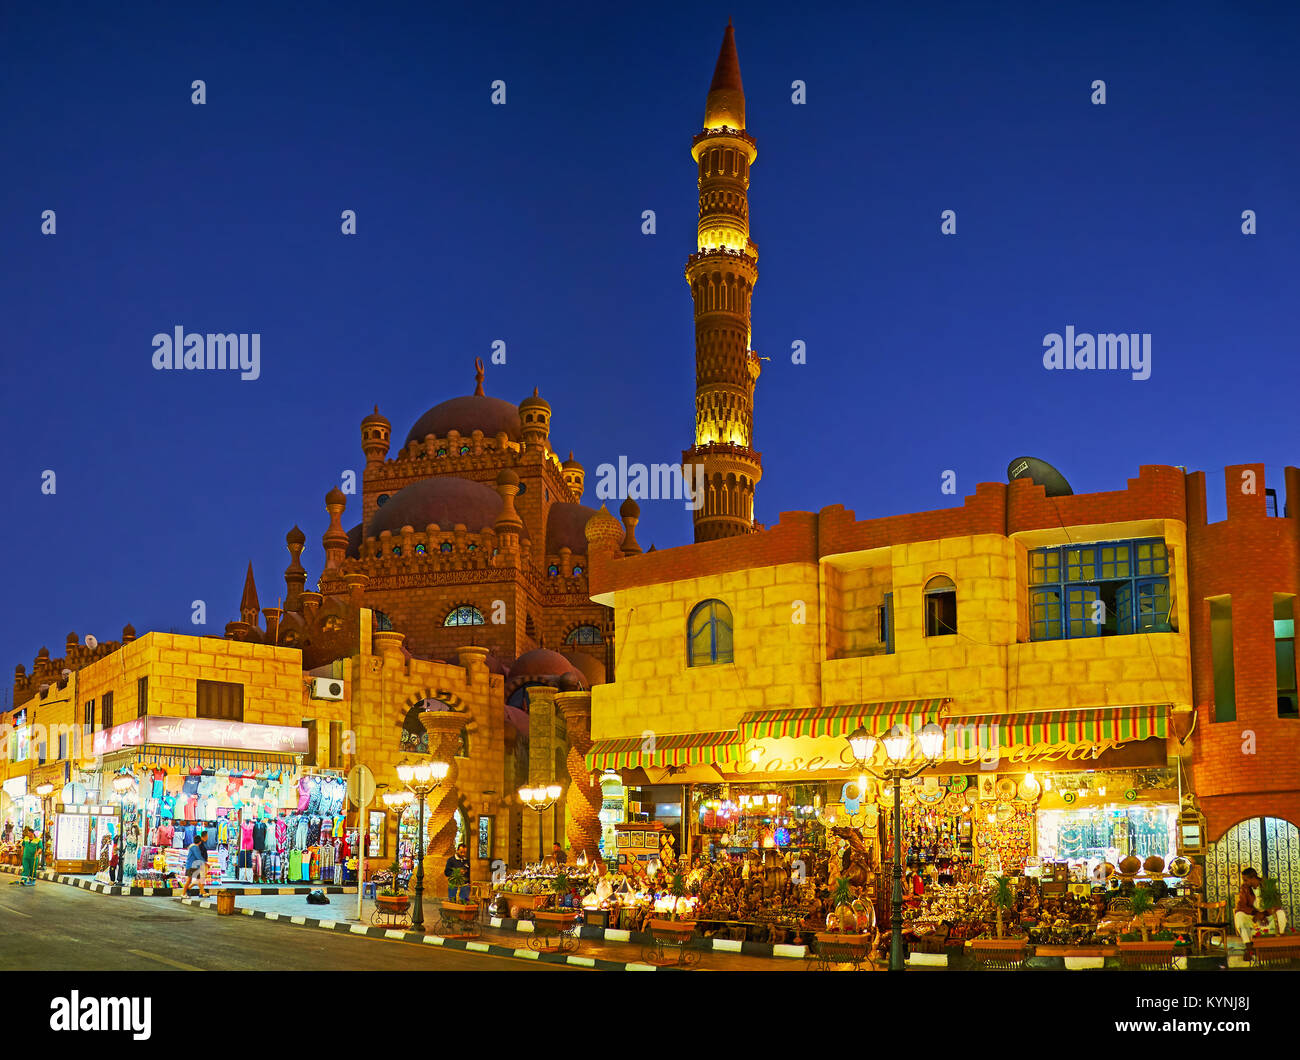 SHARM EL SHEIKH, EGYPTE- 15 DÉCEMBRE 2017 : les nombreux étals de marché du vieux bazar avec une large gamme d'articles souvenirs, de vêtements de plage, de fruits et d'autres bonnes Banque D'Images